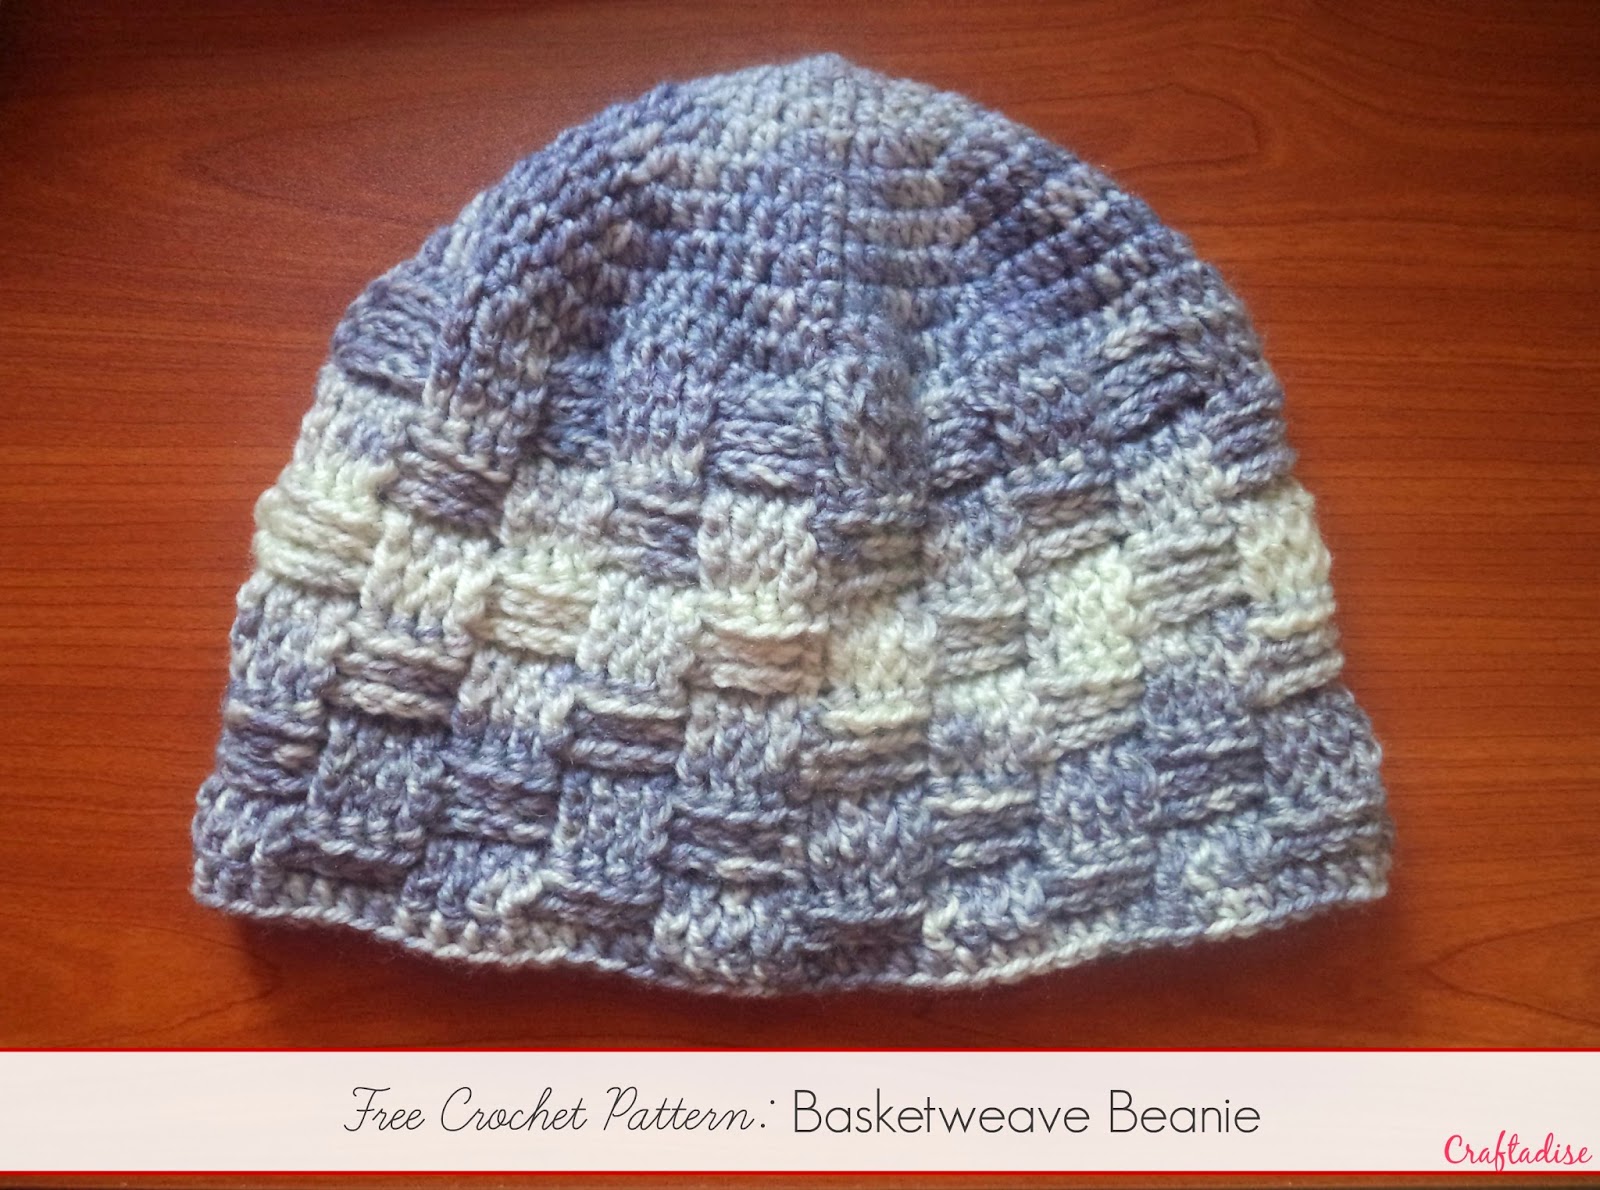 Free Crochet Pattern: Basketweave Beanie